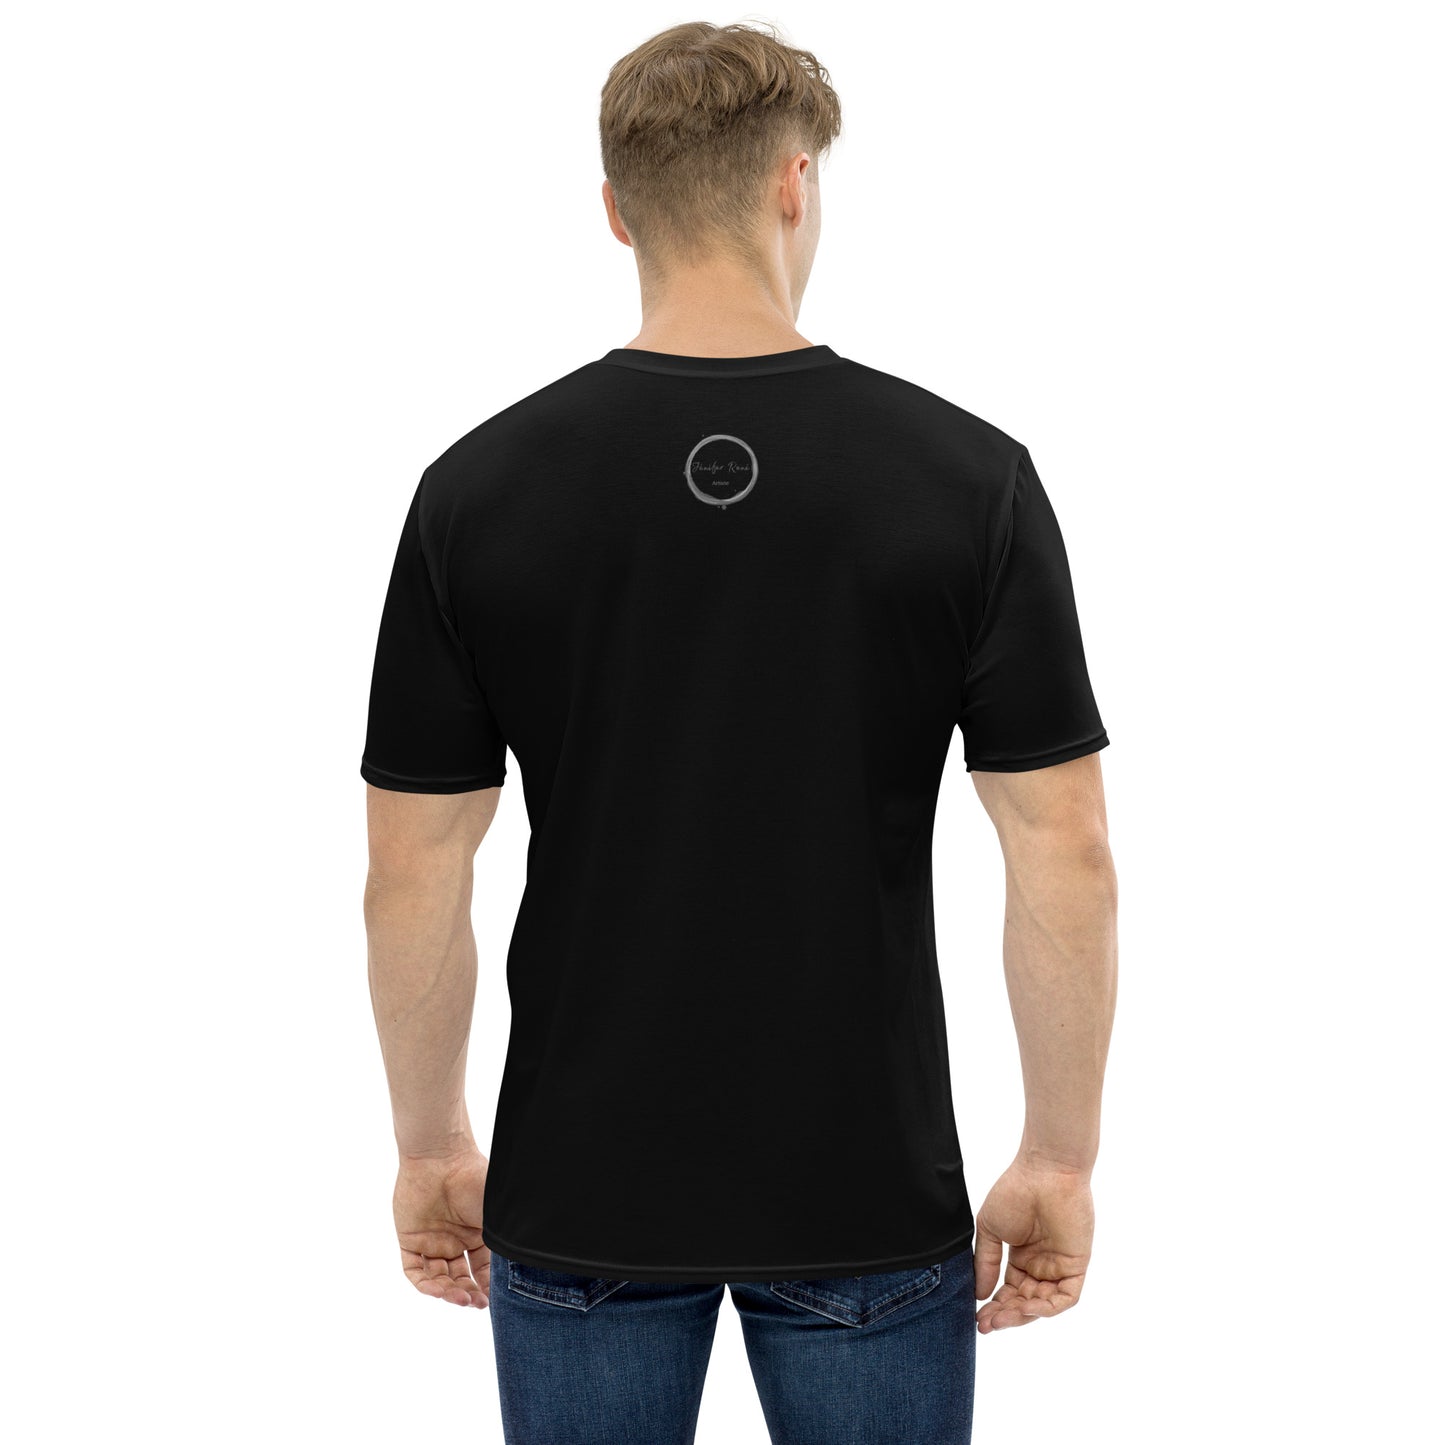 T-shirt noir pour homme - Comme dans un rêve